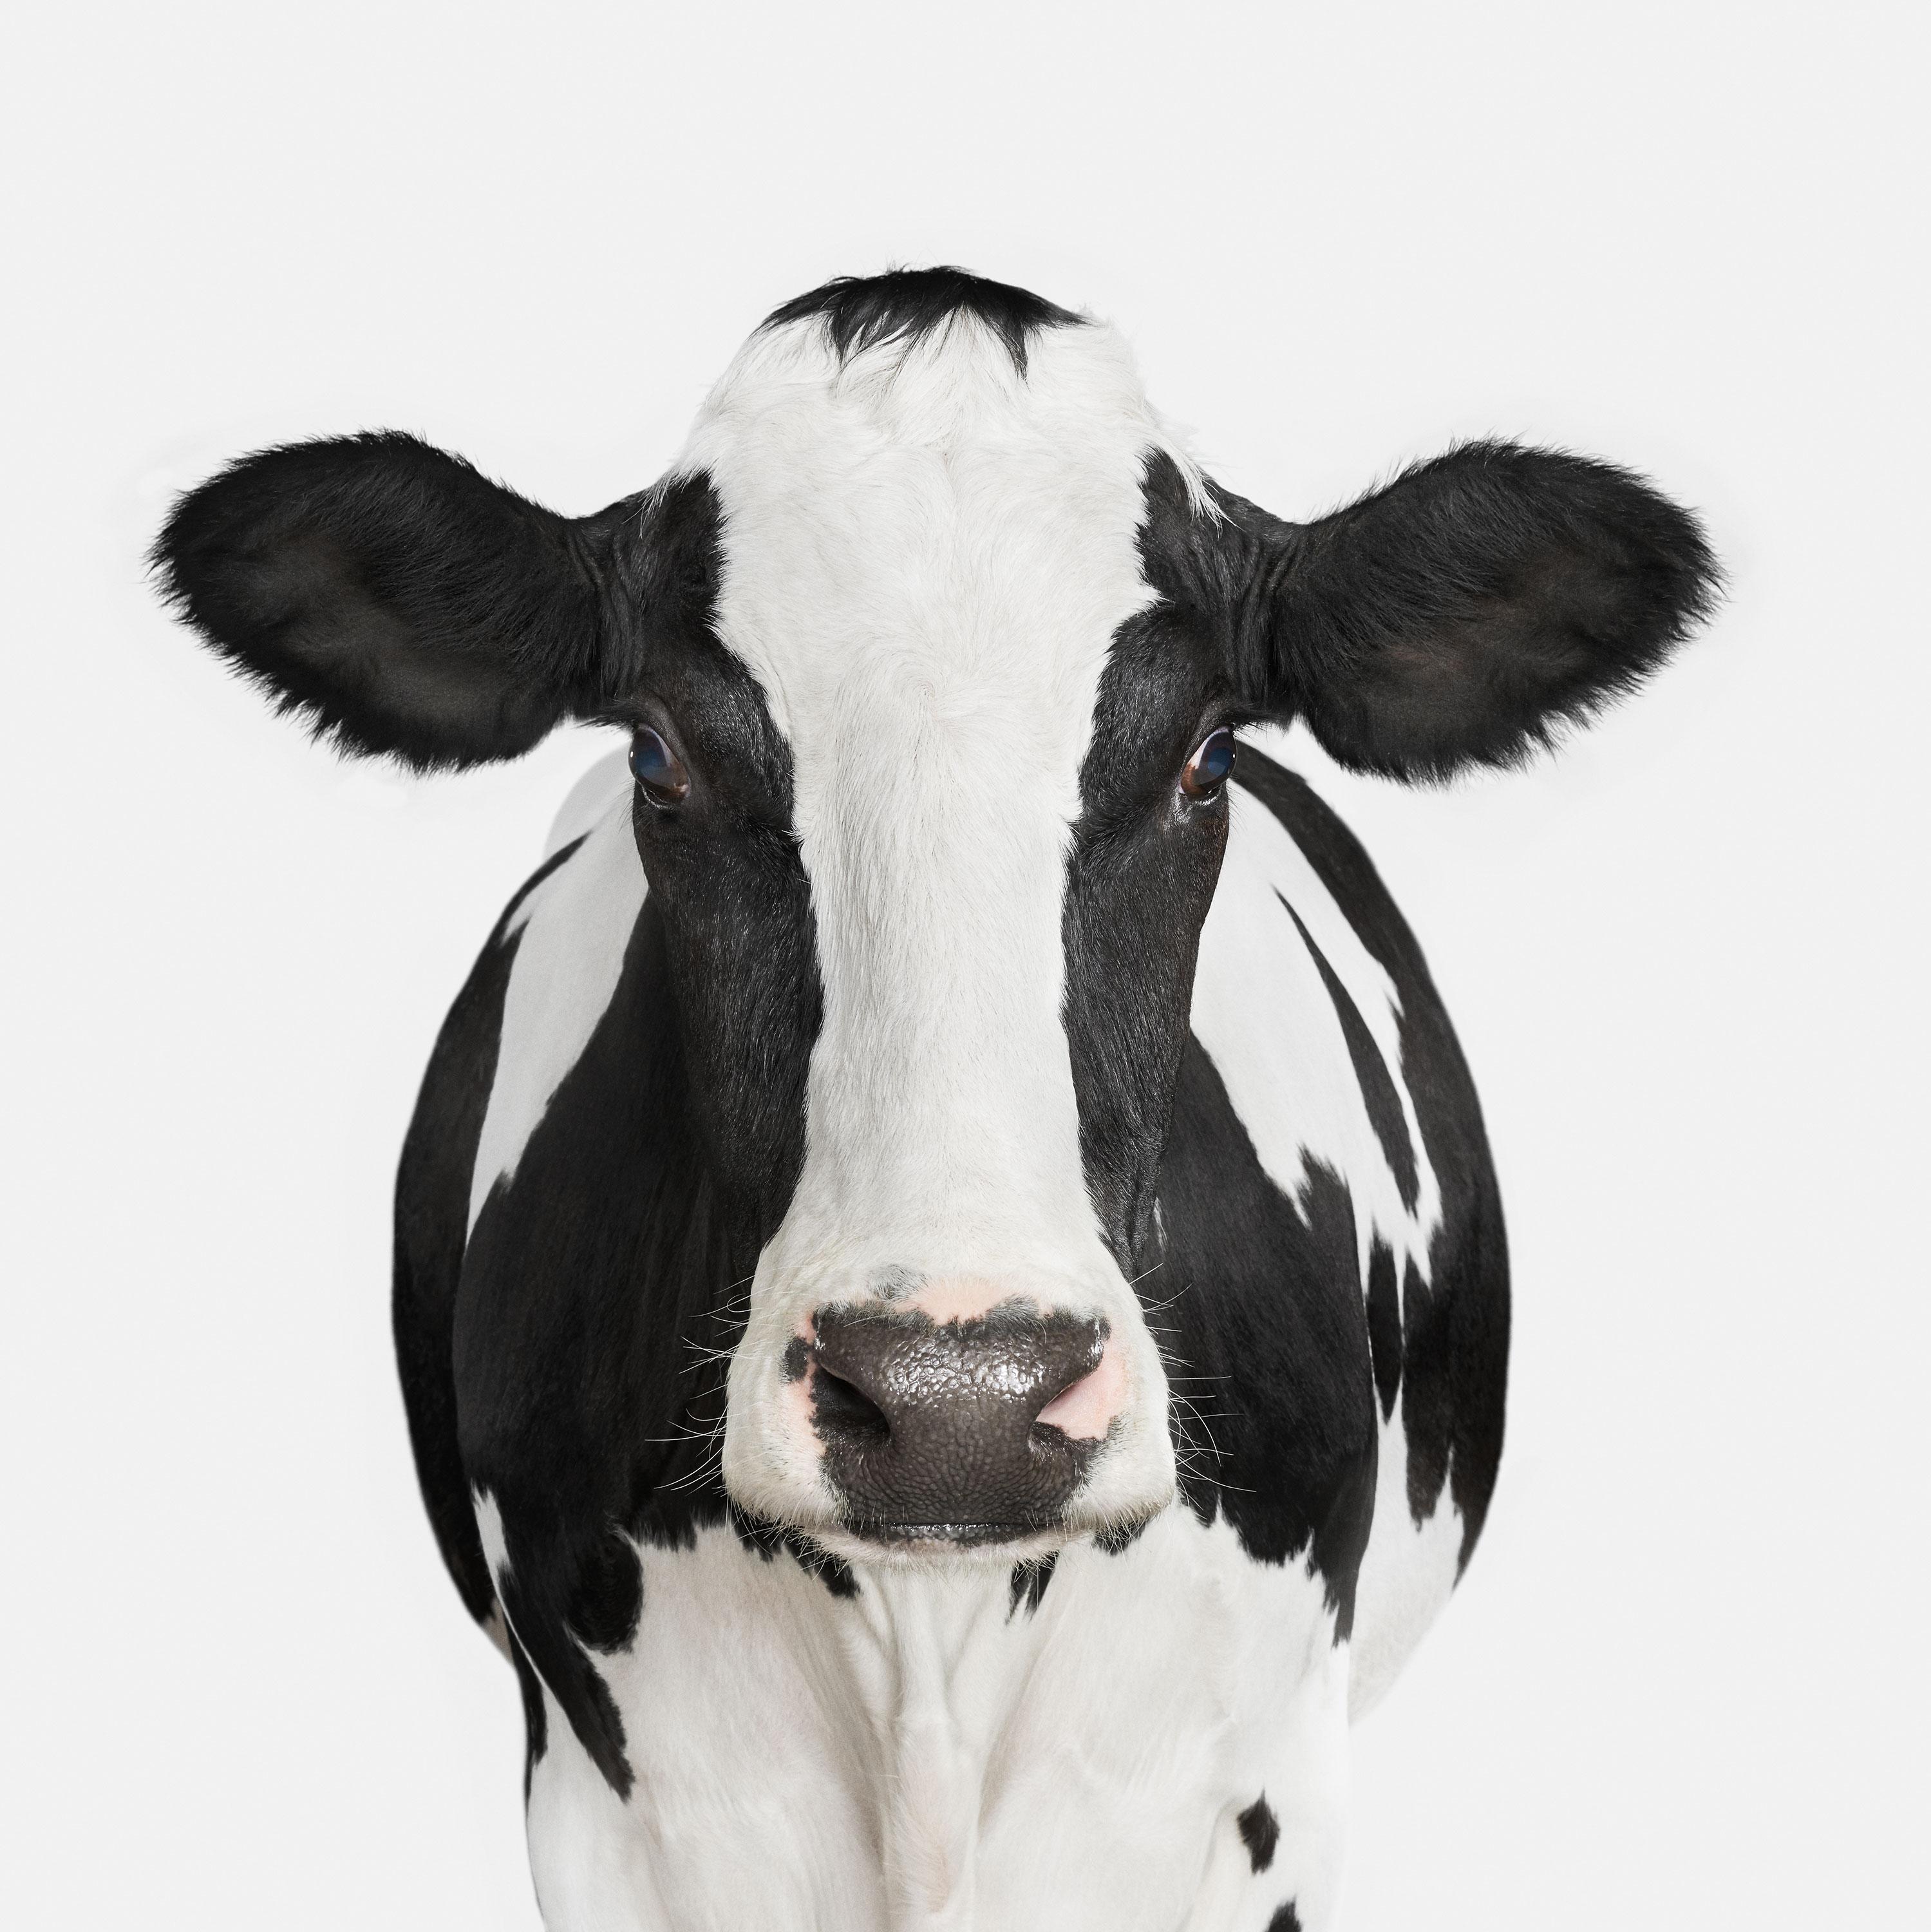 Randal Ford Animal Print - Dairy Cow No. 1 (40" x 40")